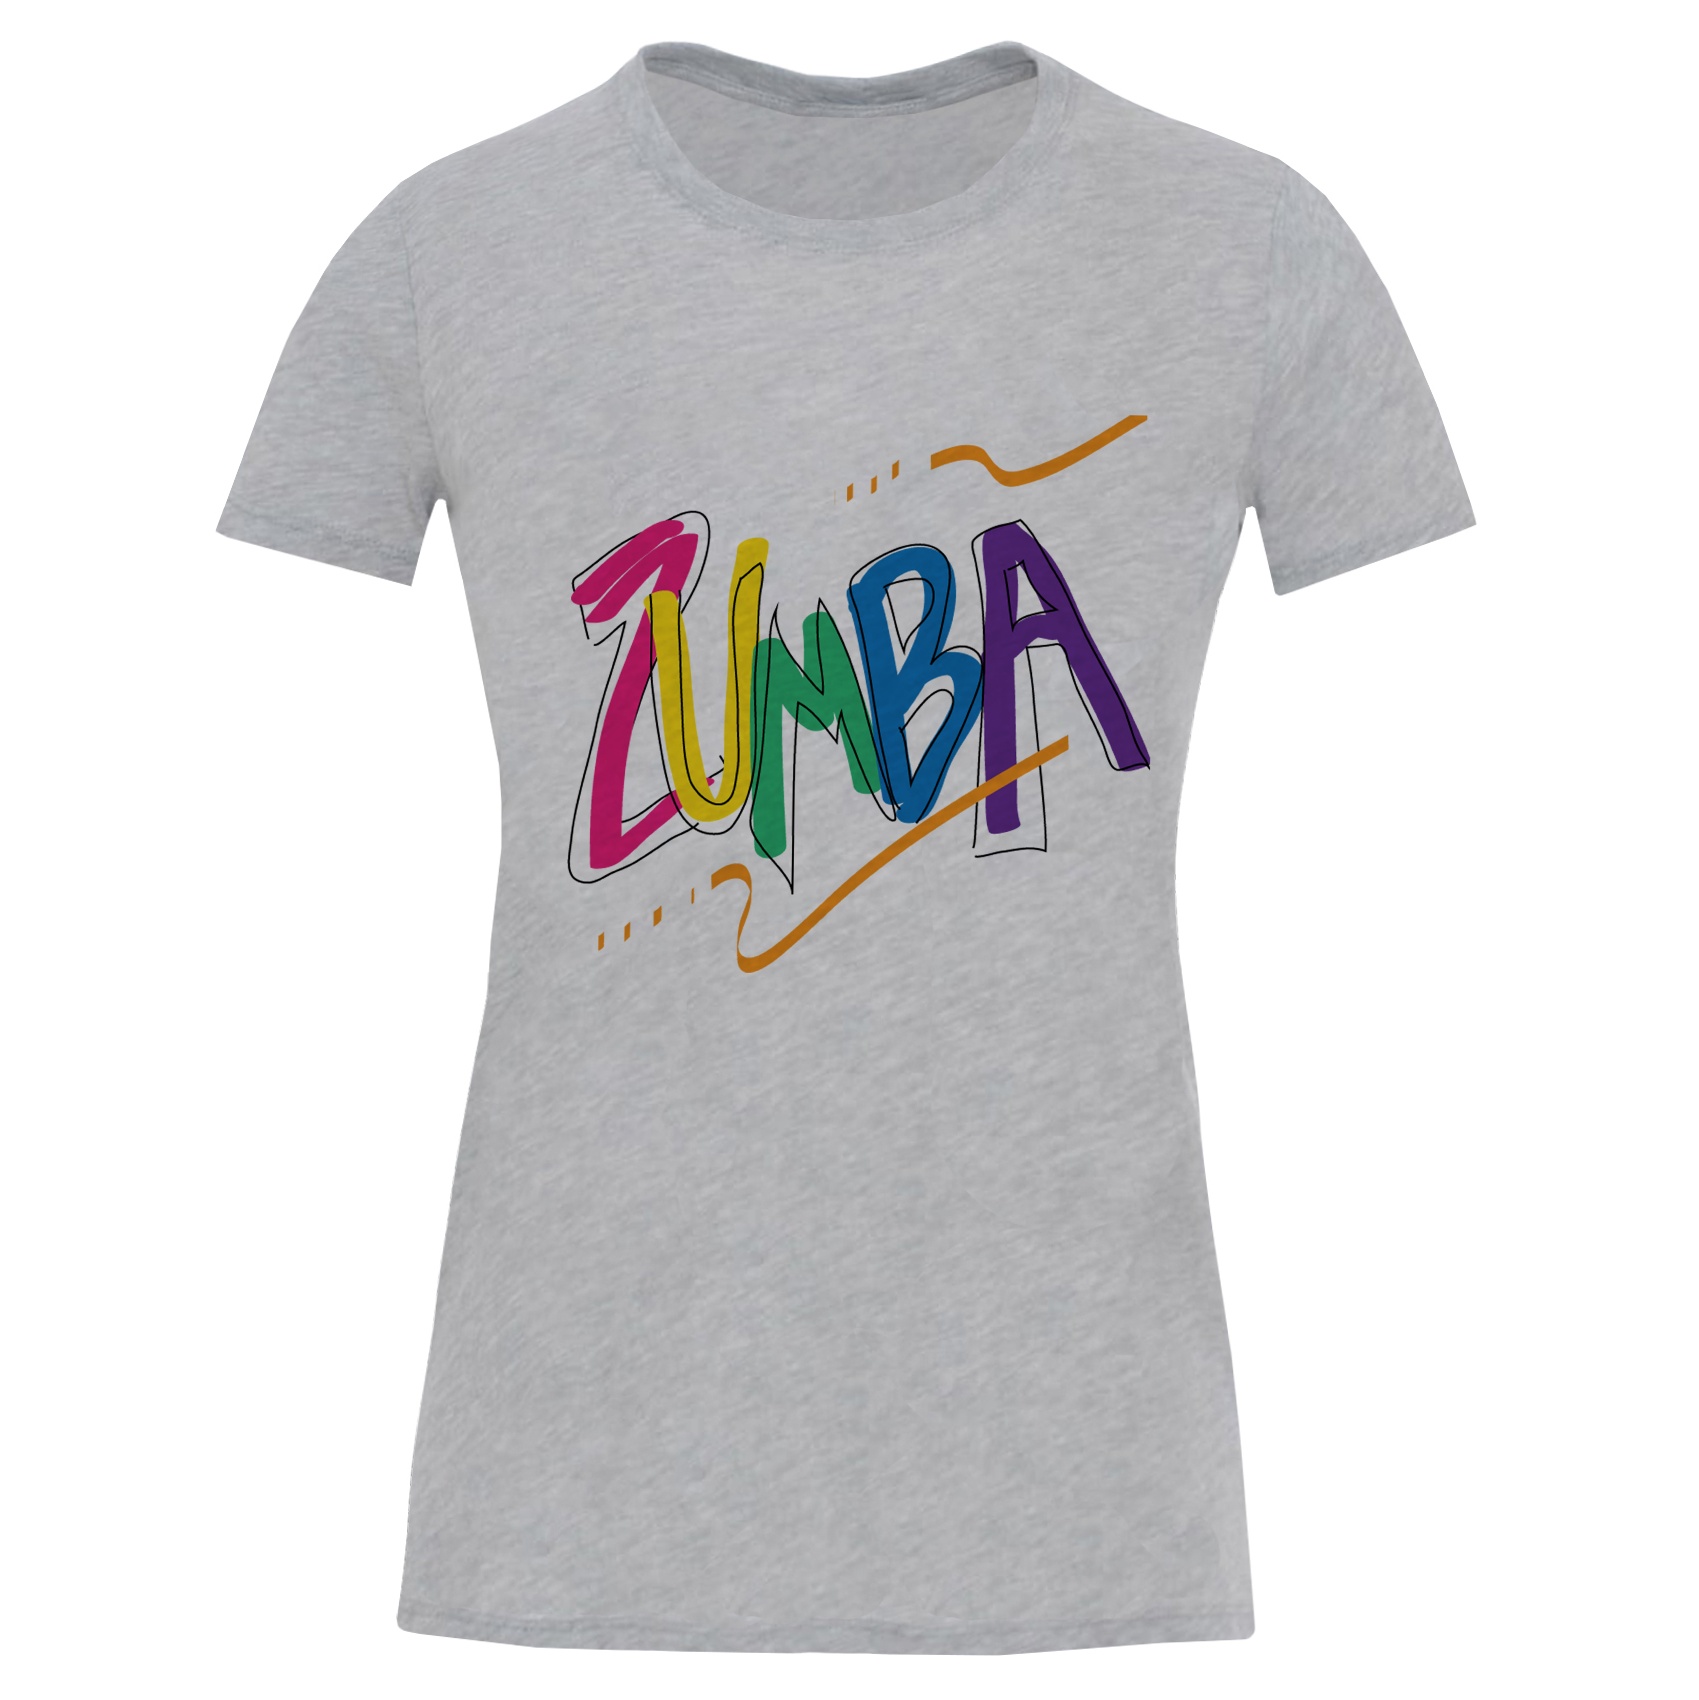 تی شرت آستین کوتاه زنانه طرح zumba کد S538